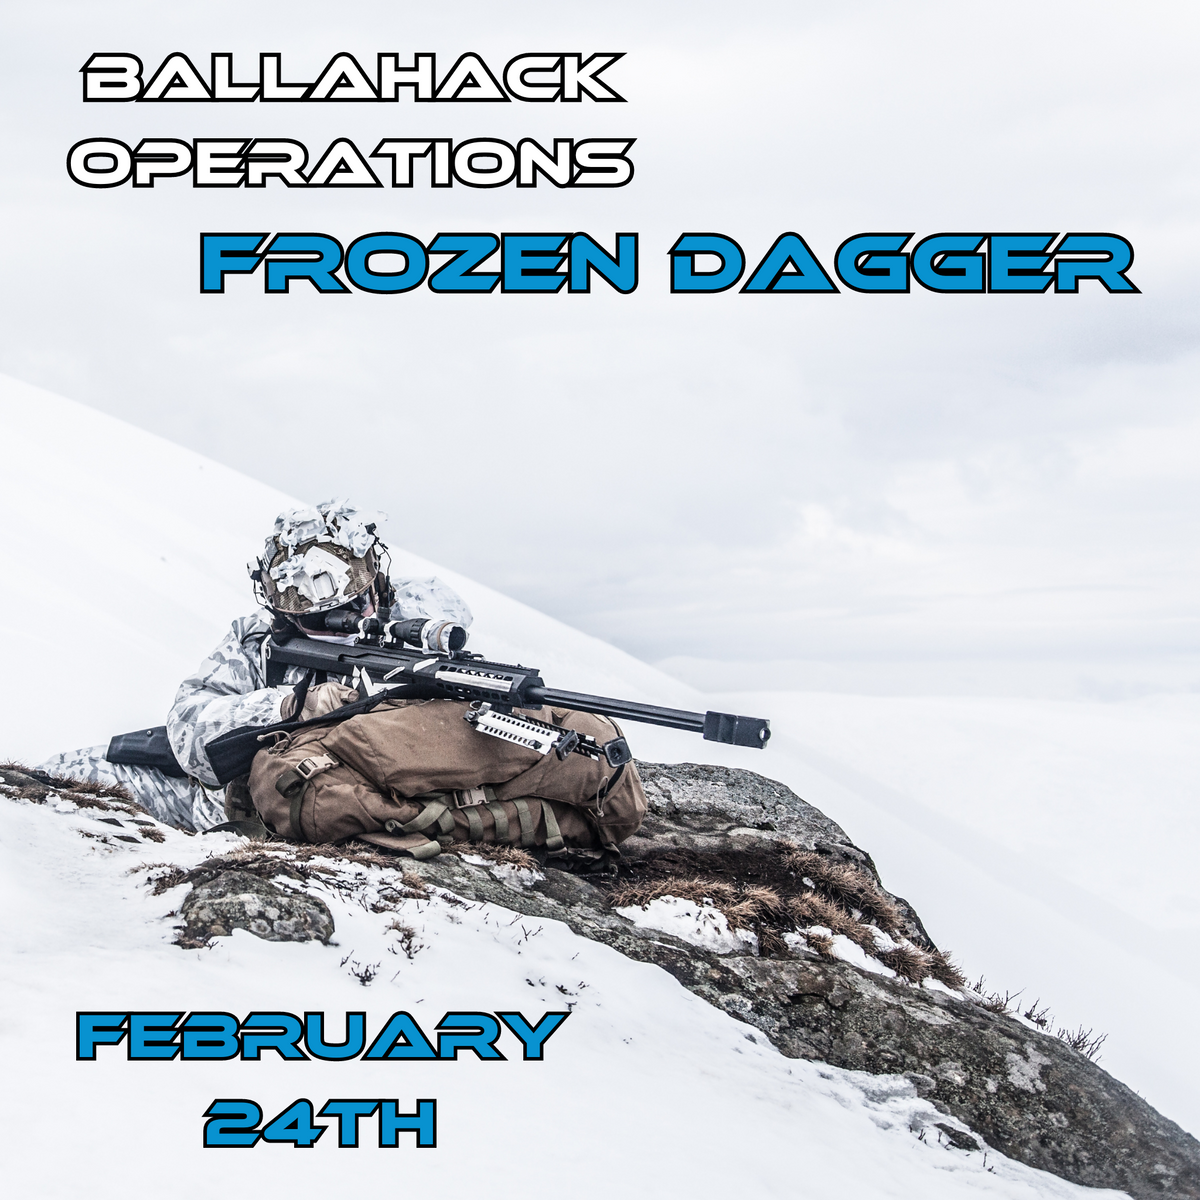 Ballahack Operations: Frozen Dagger